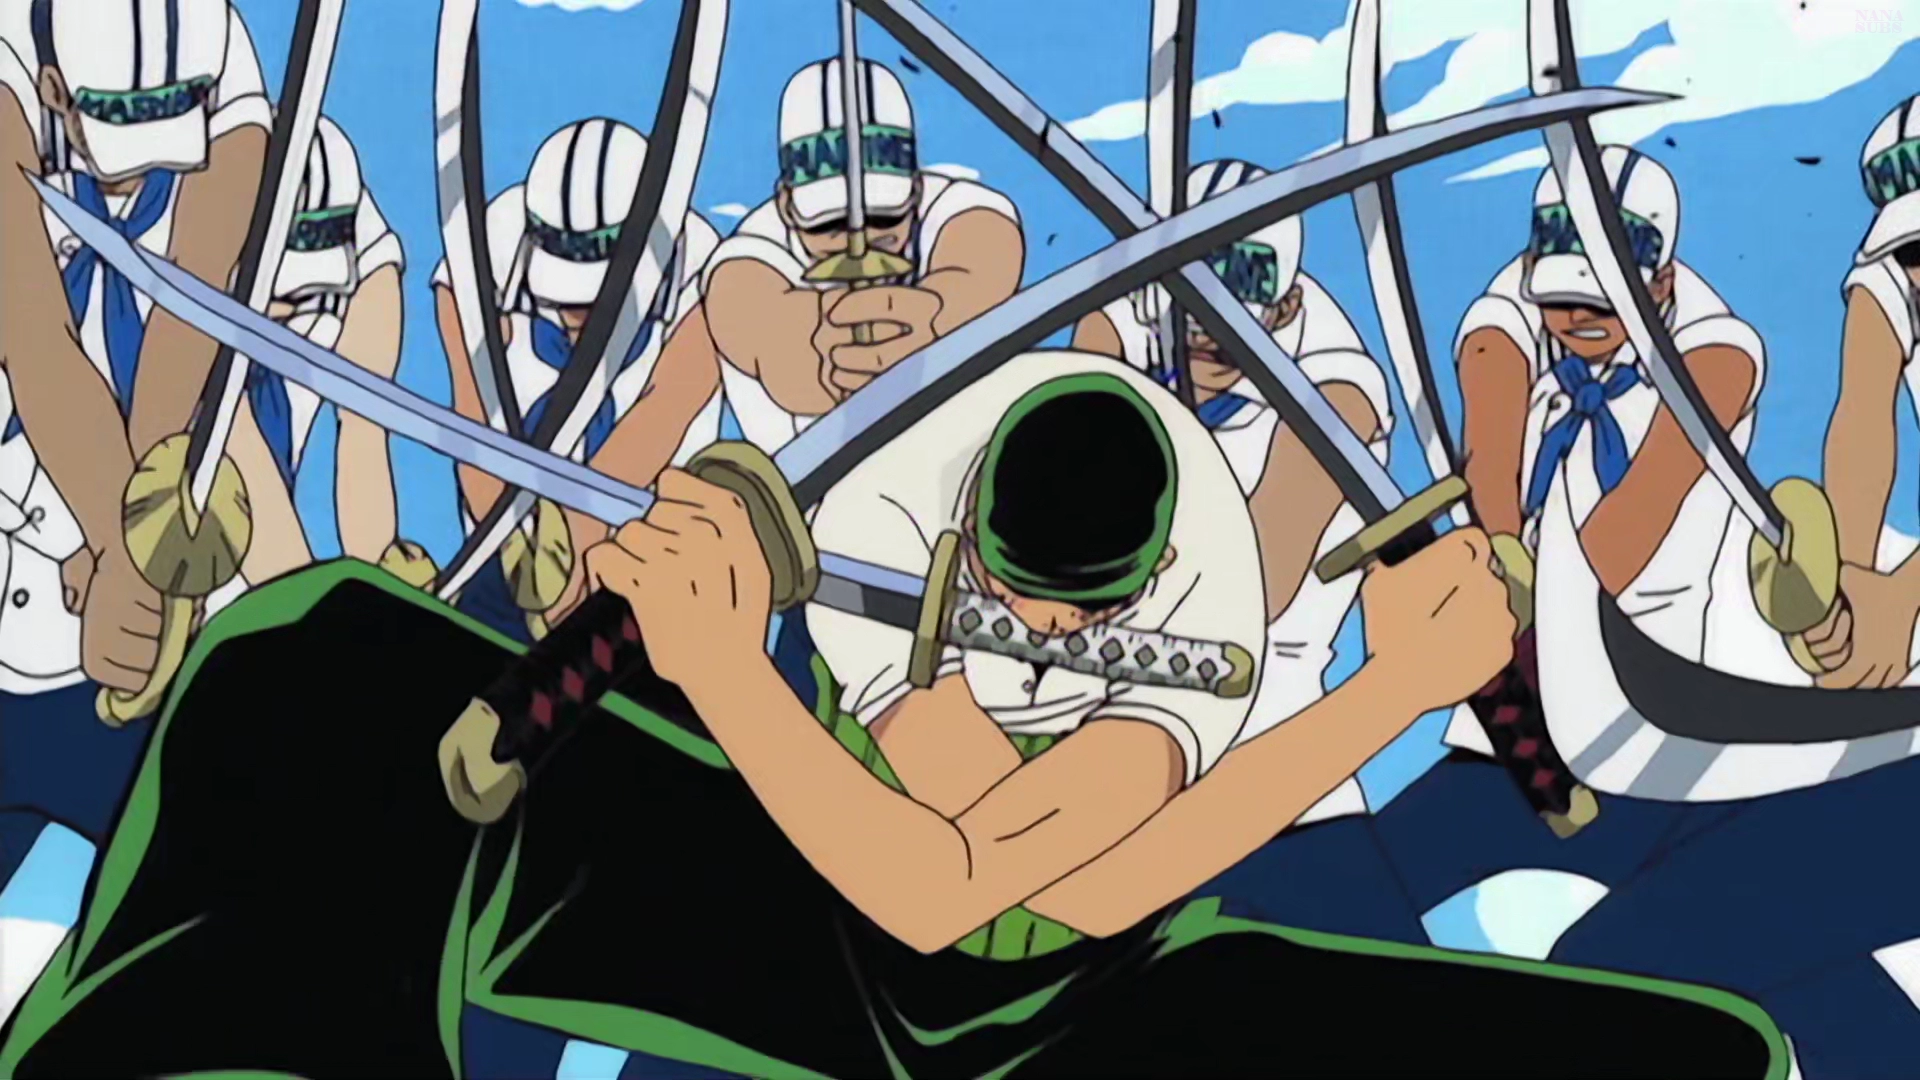 Minaturka 3 odcinka One Piece